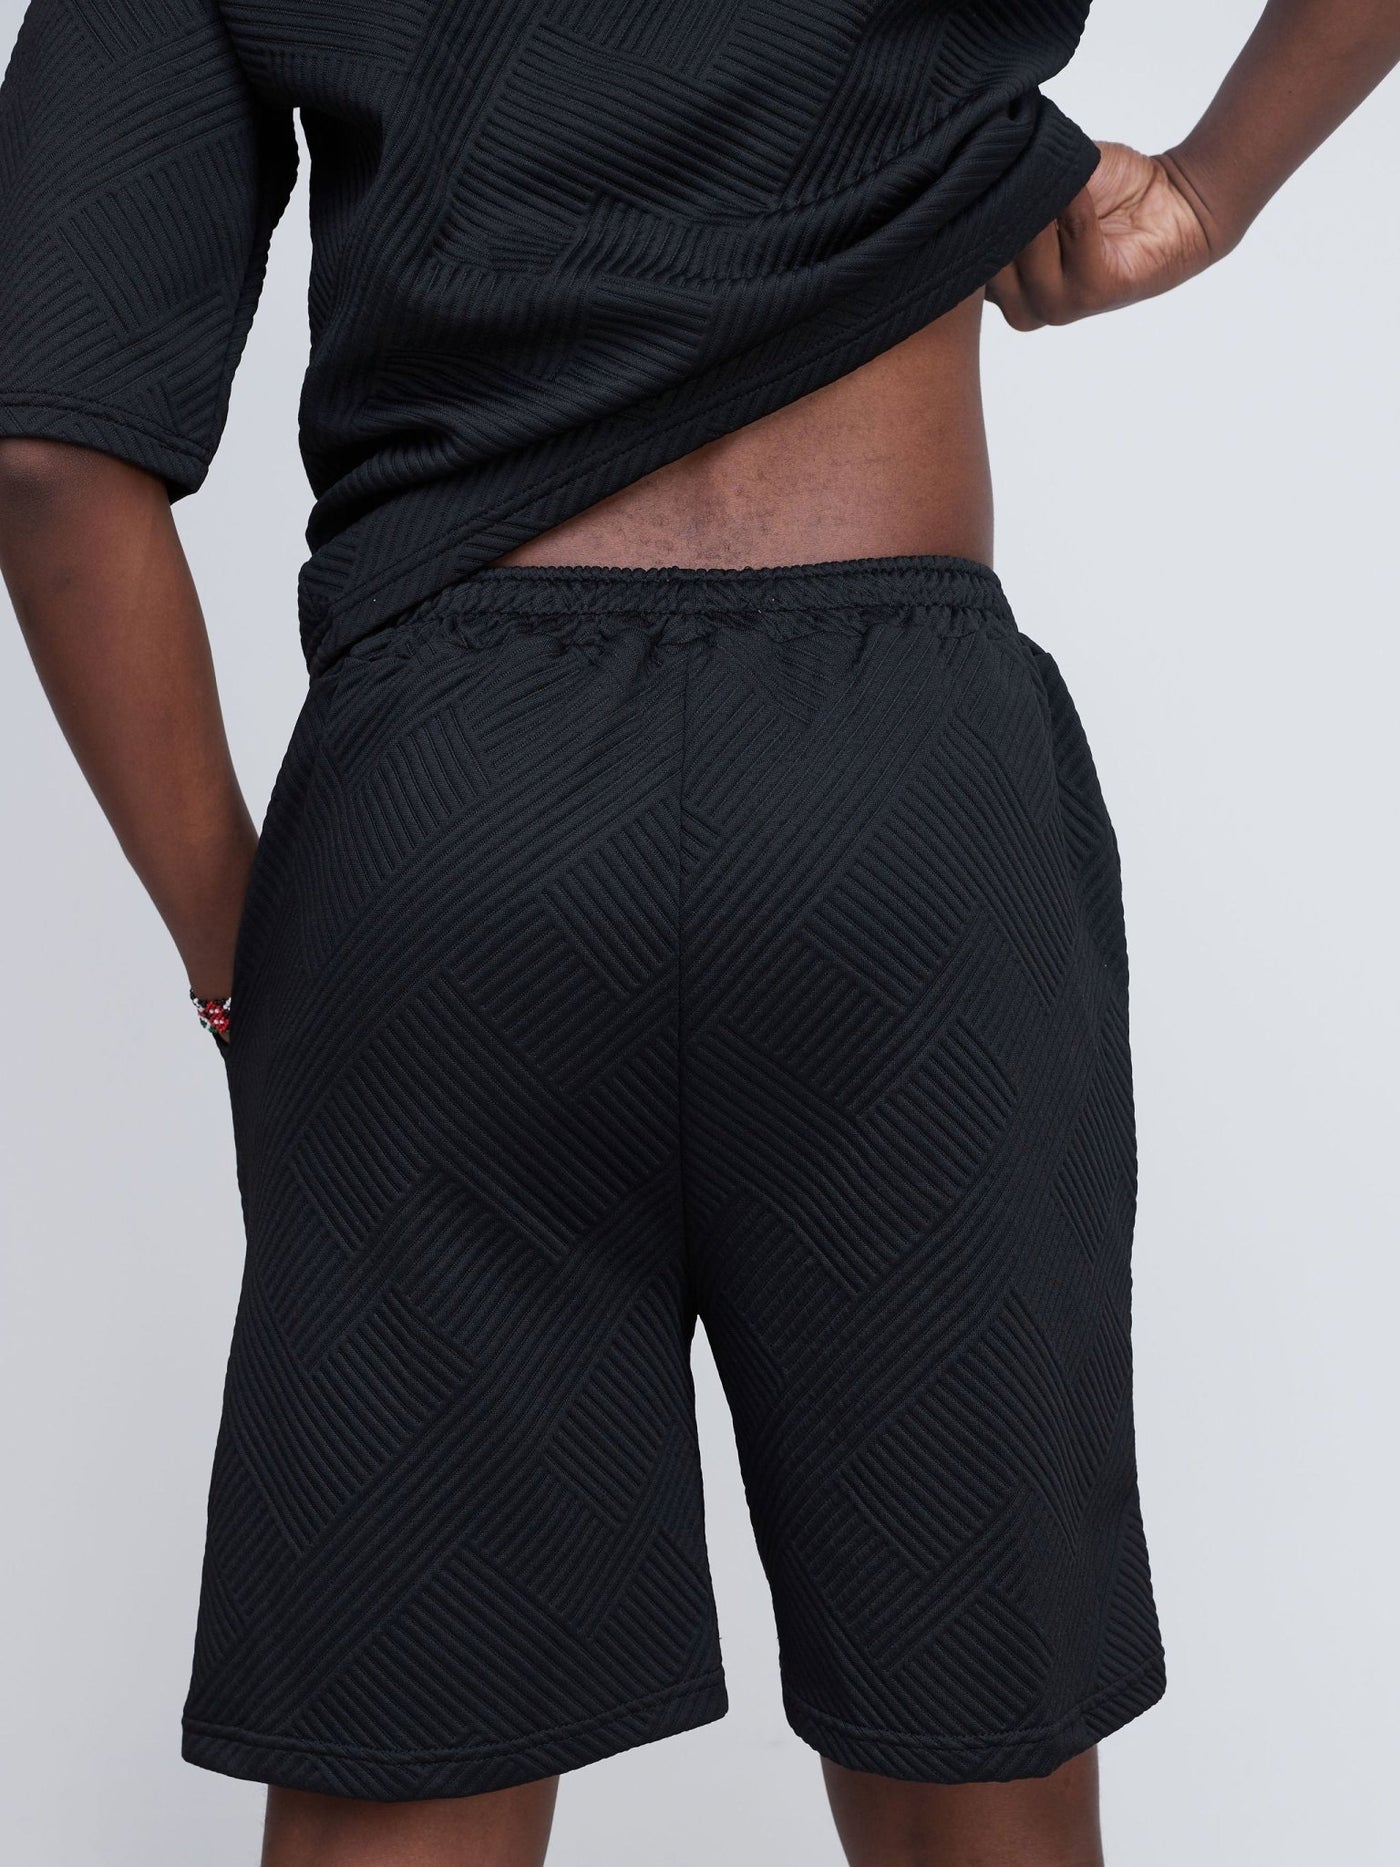 Zetu Men's Diagonal Line Textured Shorts - Black - Shopzetu